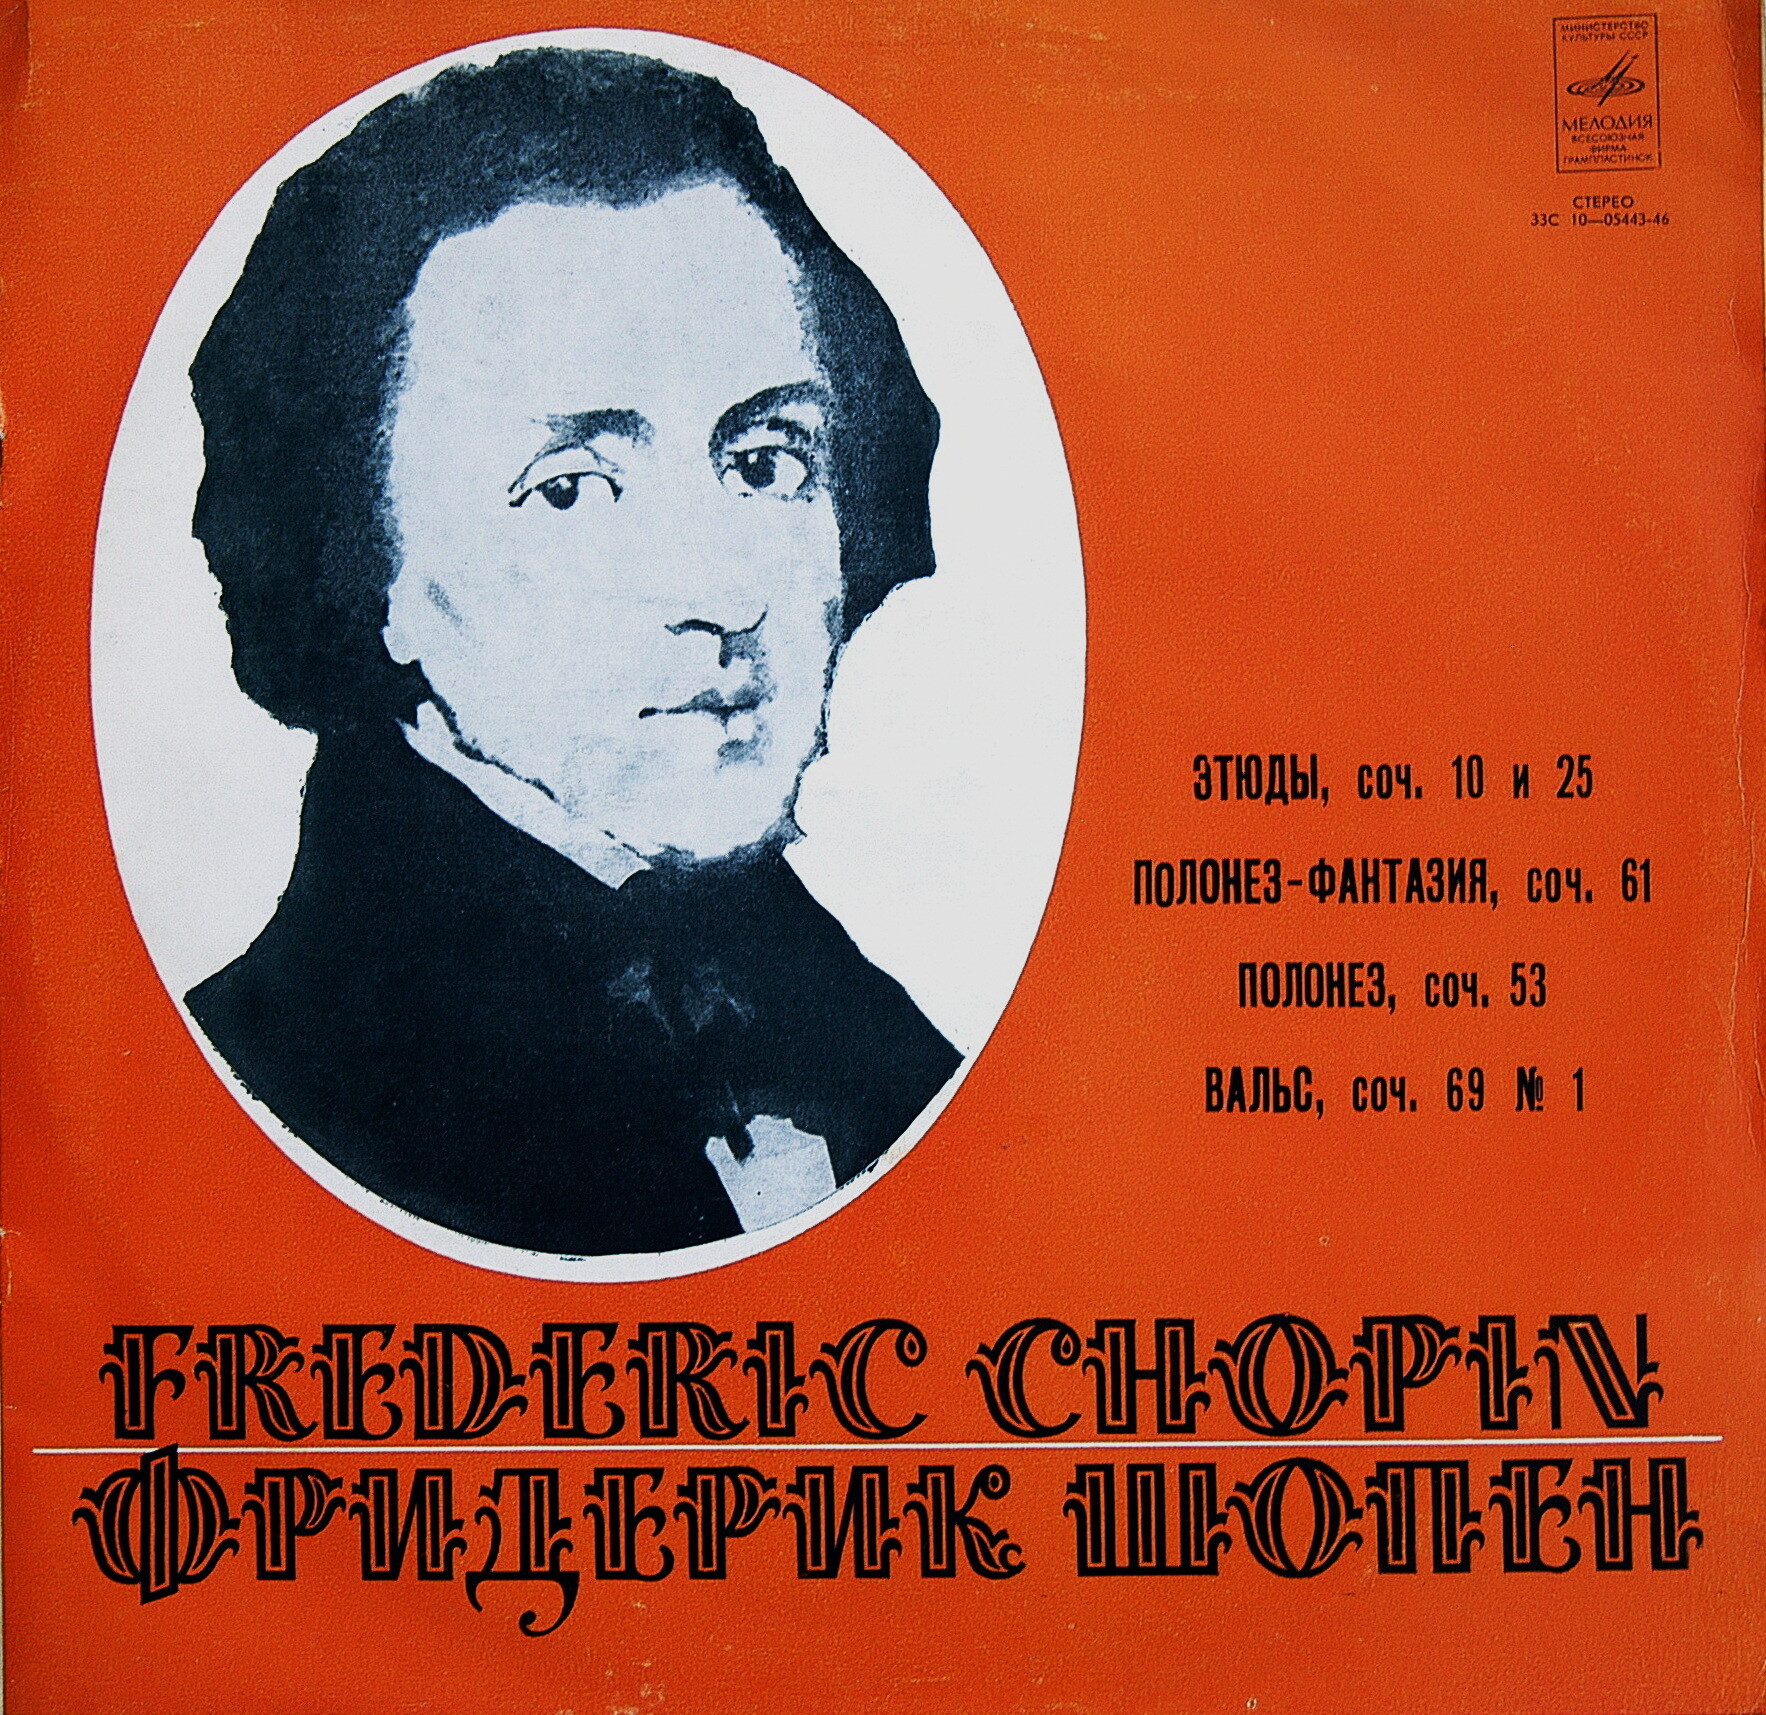 Ф. Шопен (1810 - 1849). Играет Элисо Вирсаладзе